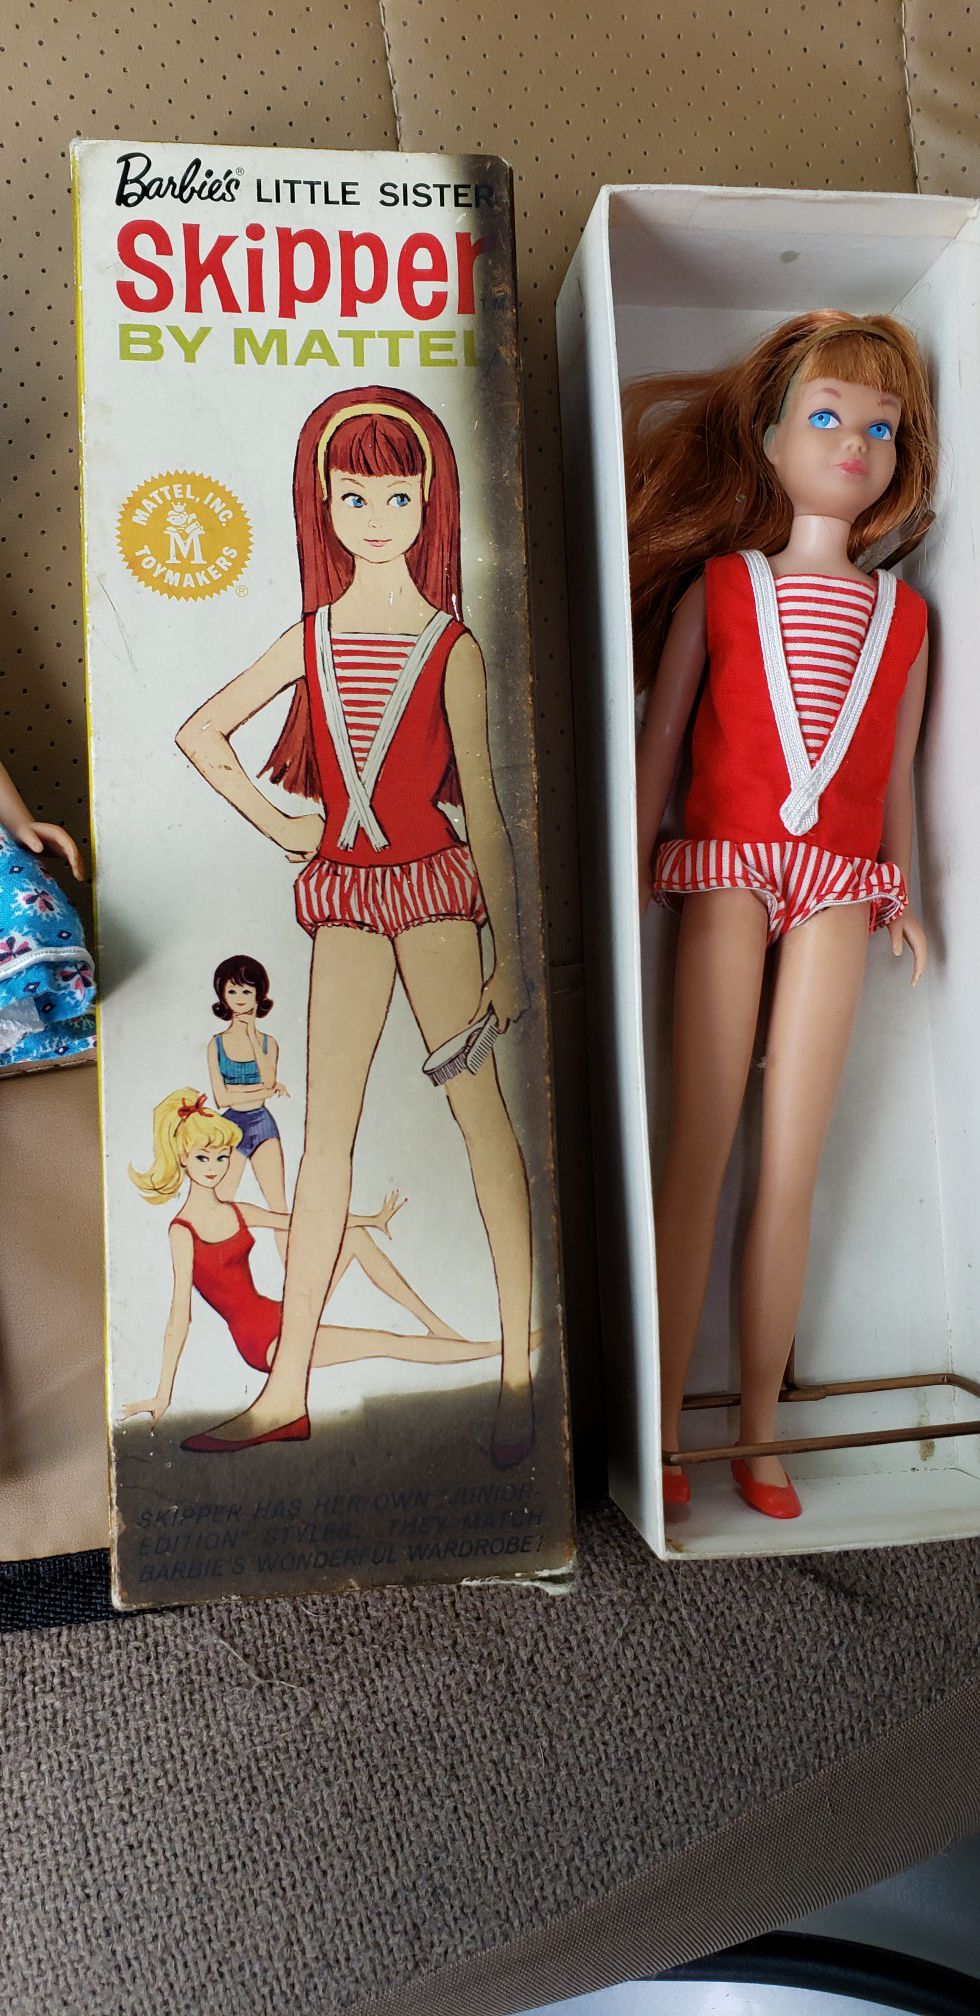 1960's Barbie's little sister, Skipper